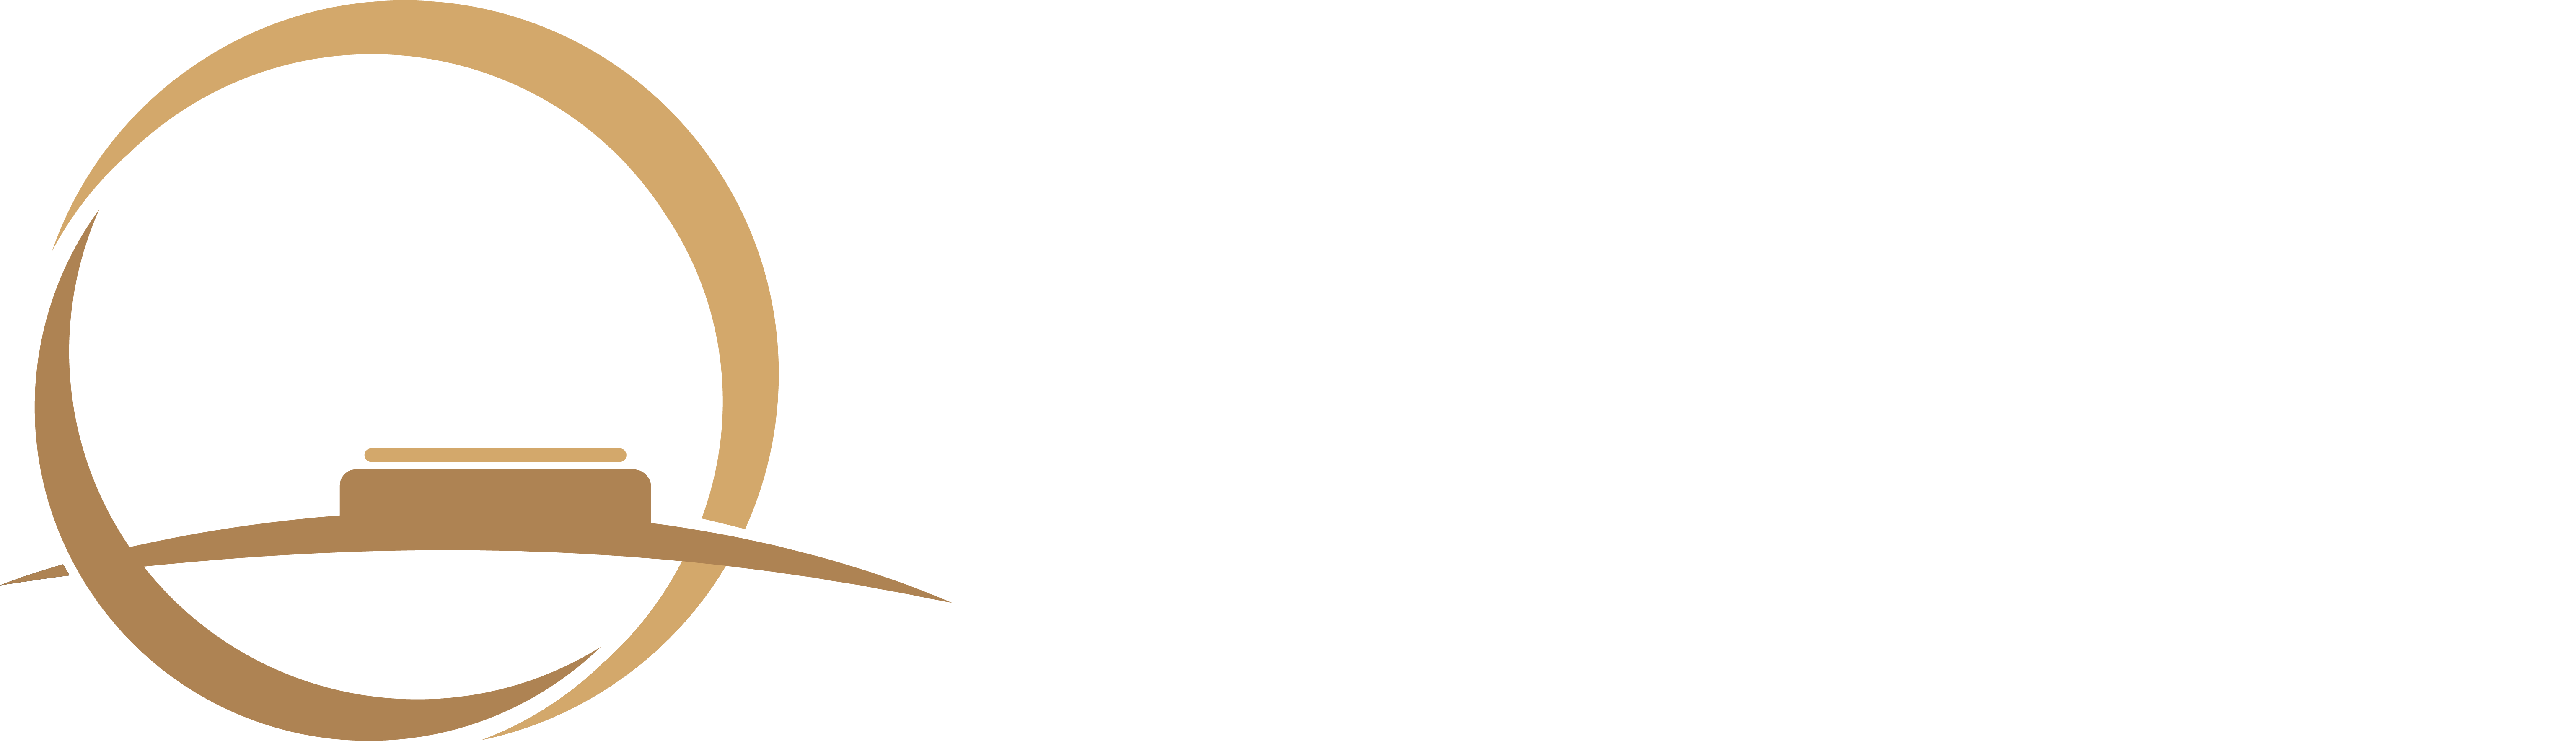 lawyers in Pakistan